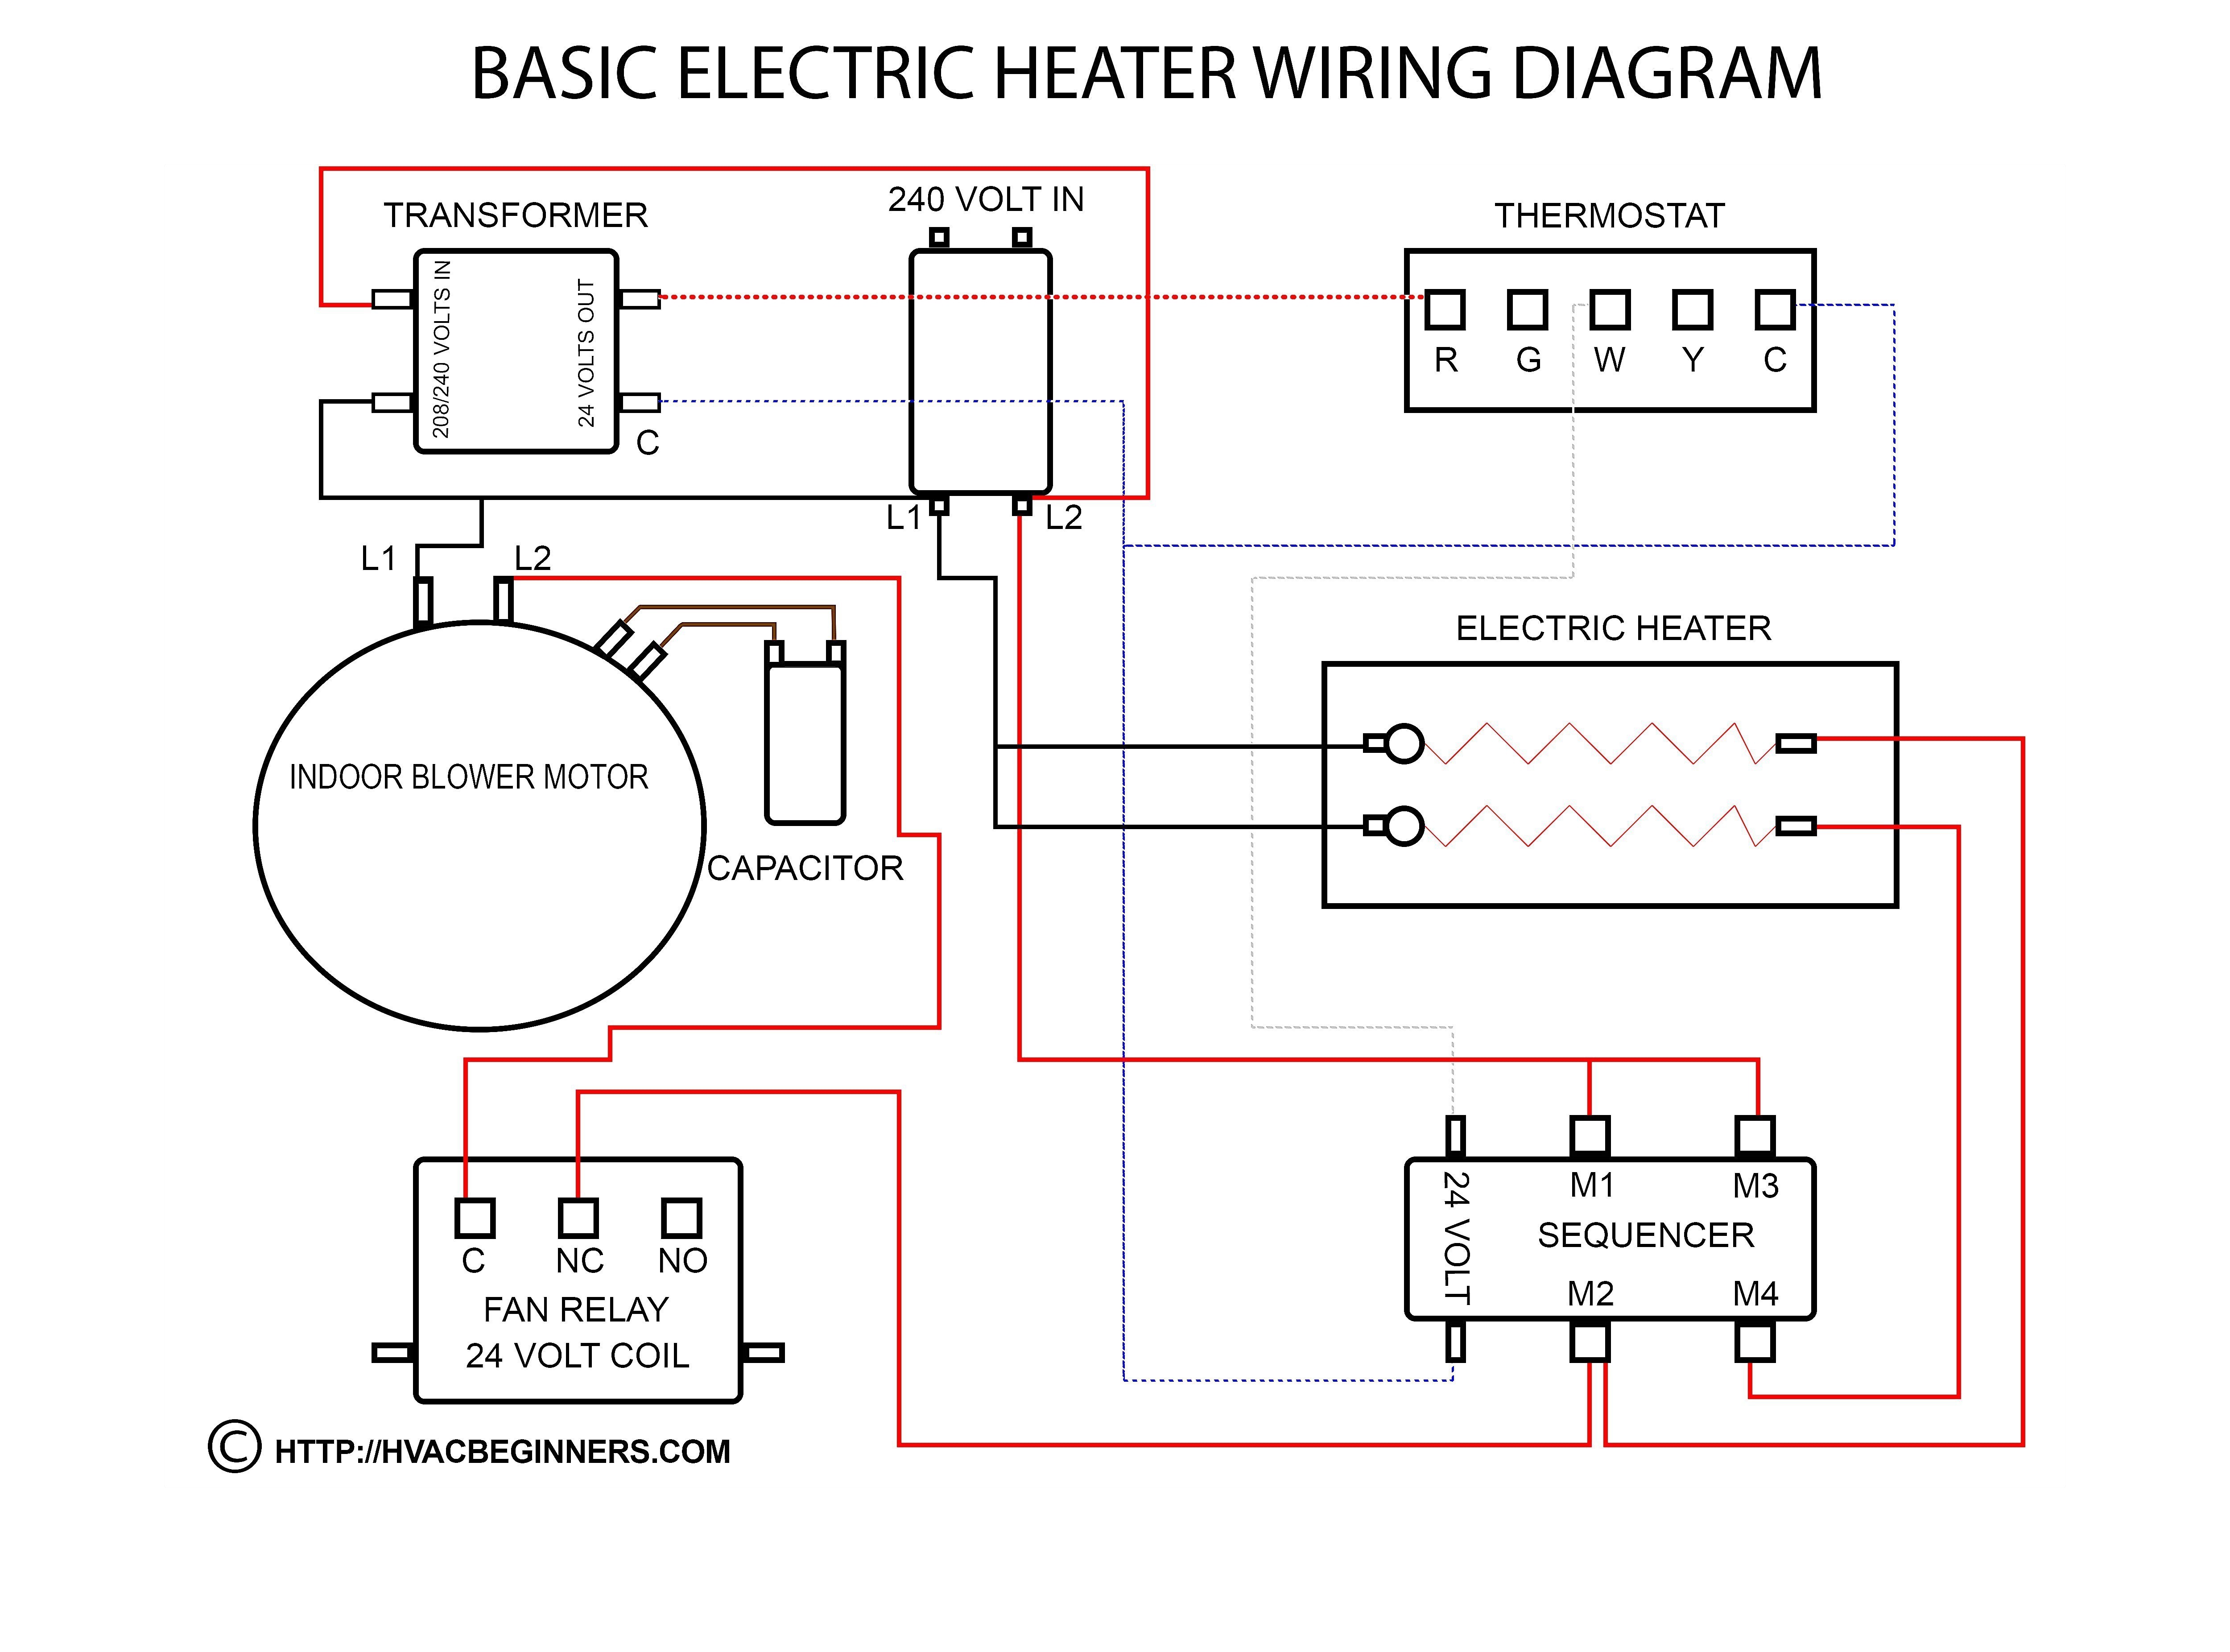 Wiring Diagram Furnace Blower Motor Save Wiring Diagram for Fasco Blower Motor Valid Blower Motor Wiring